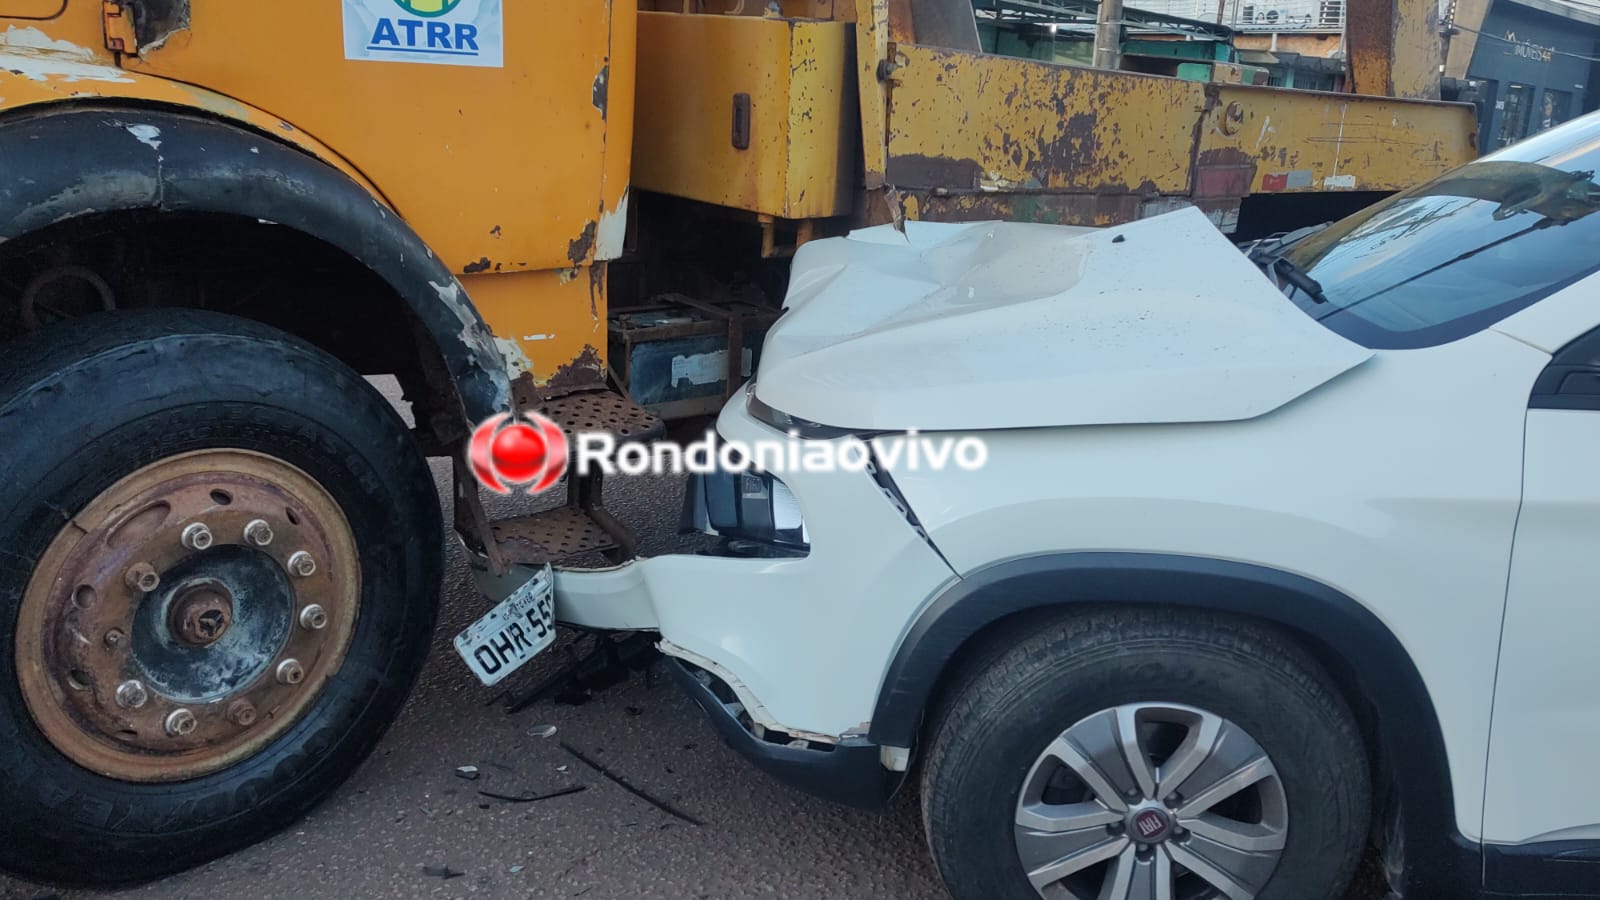 VÍDEO: Fiat Toro fica destruída em batida contra caminhão na Calama 